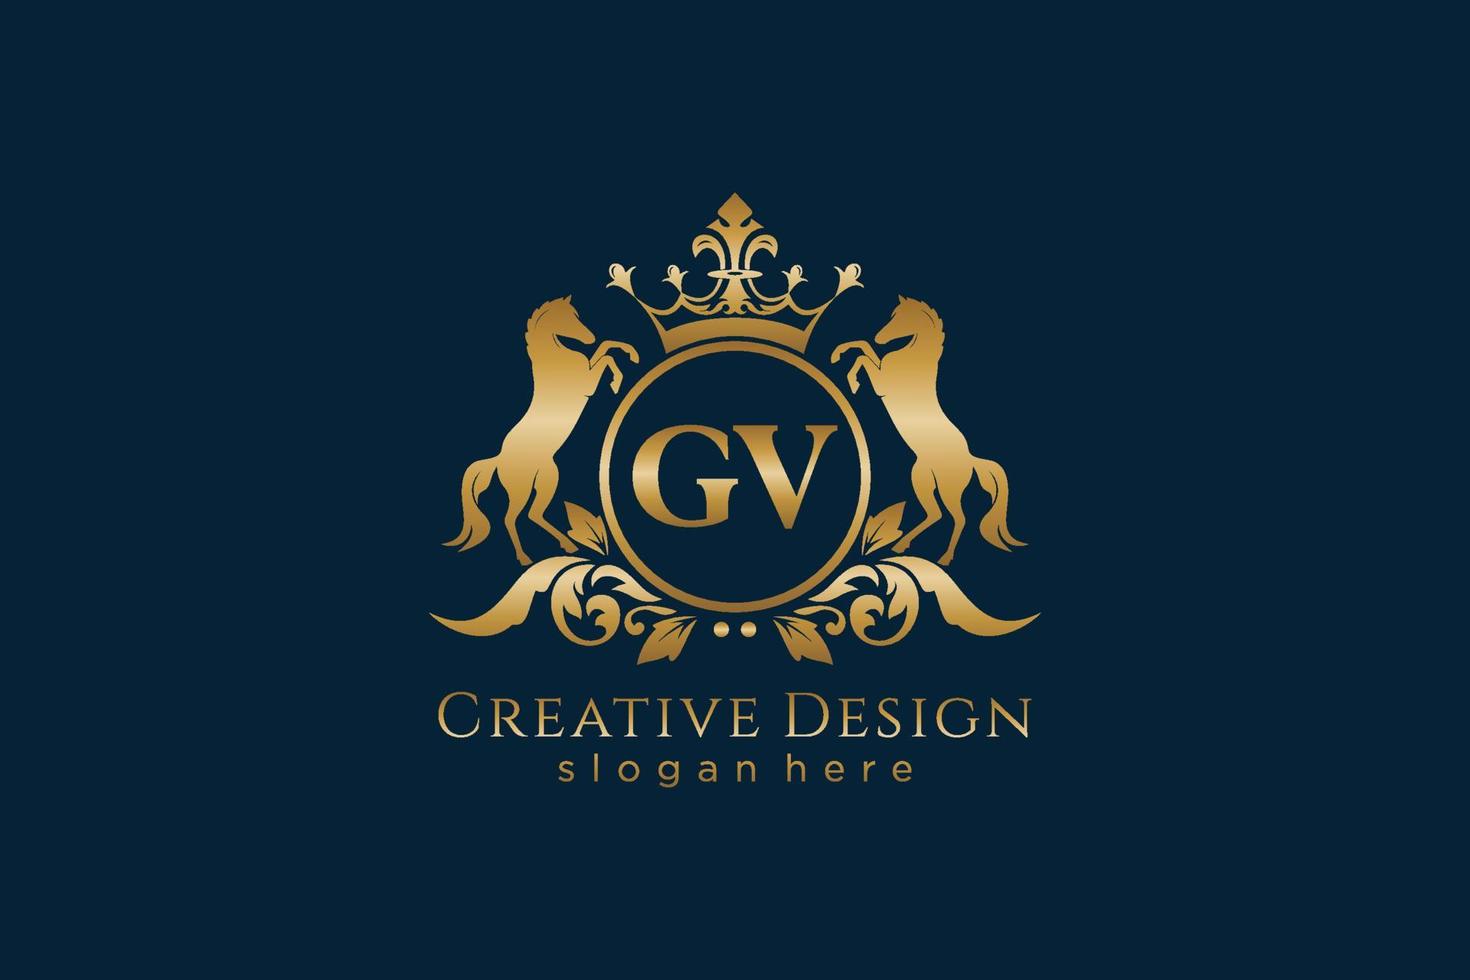 cresta dorada retro gv inicial con círculo y dos caballos, plantilla de insignia con pergaminos y corona real - perfecto para proyectos de marca de lujo vector